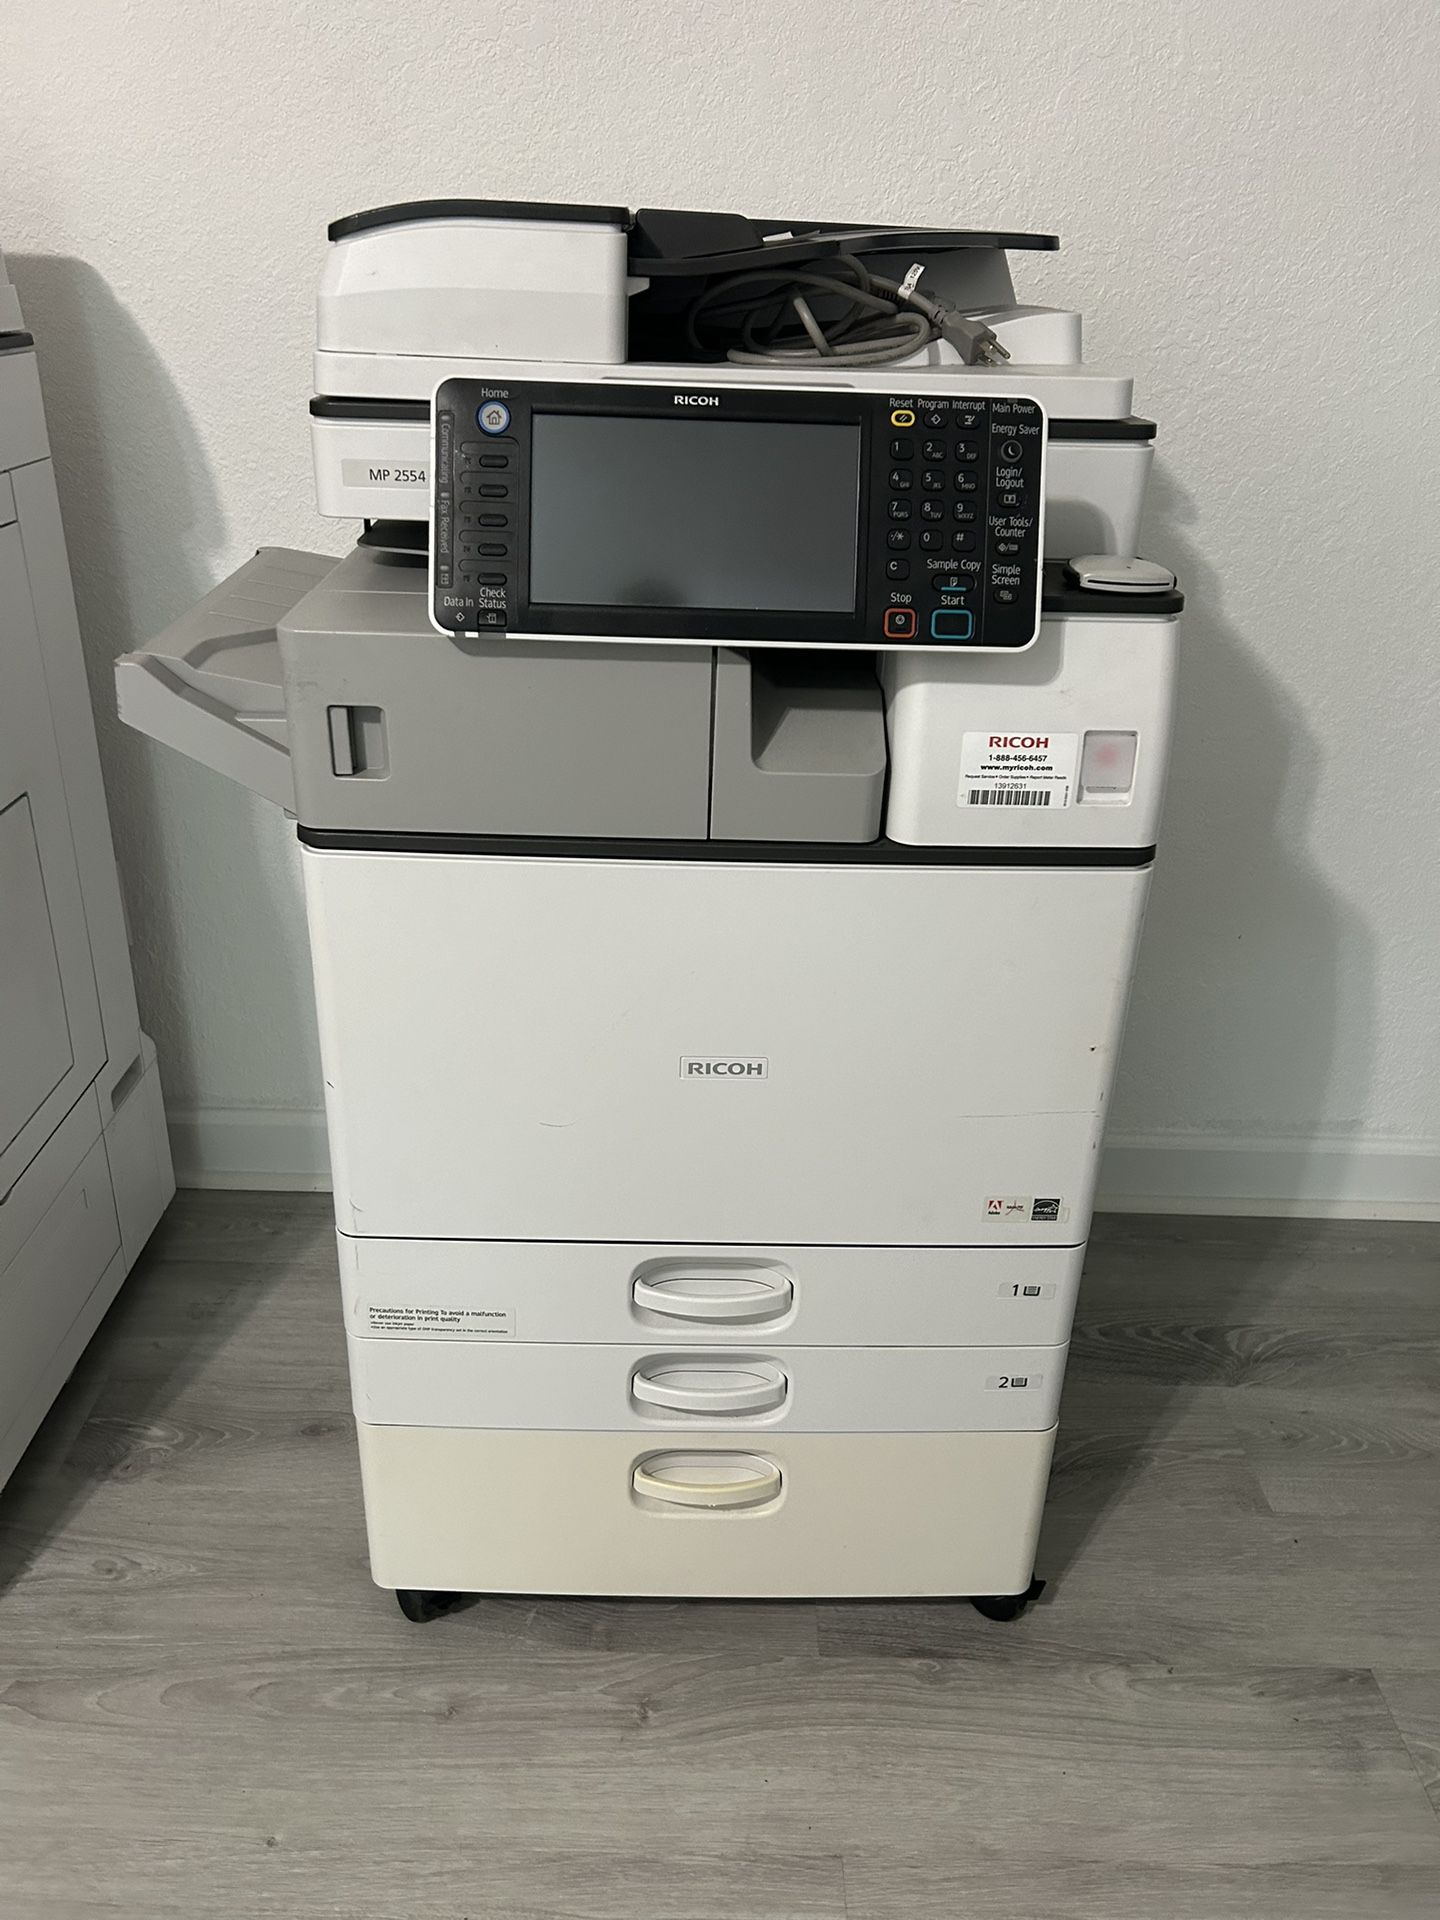 Printer Ricoh Mp 2554 Copier Machine Black And White Laser